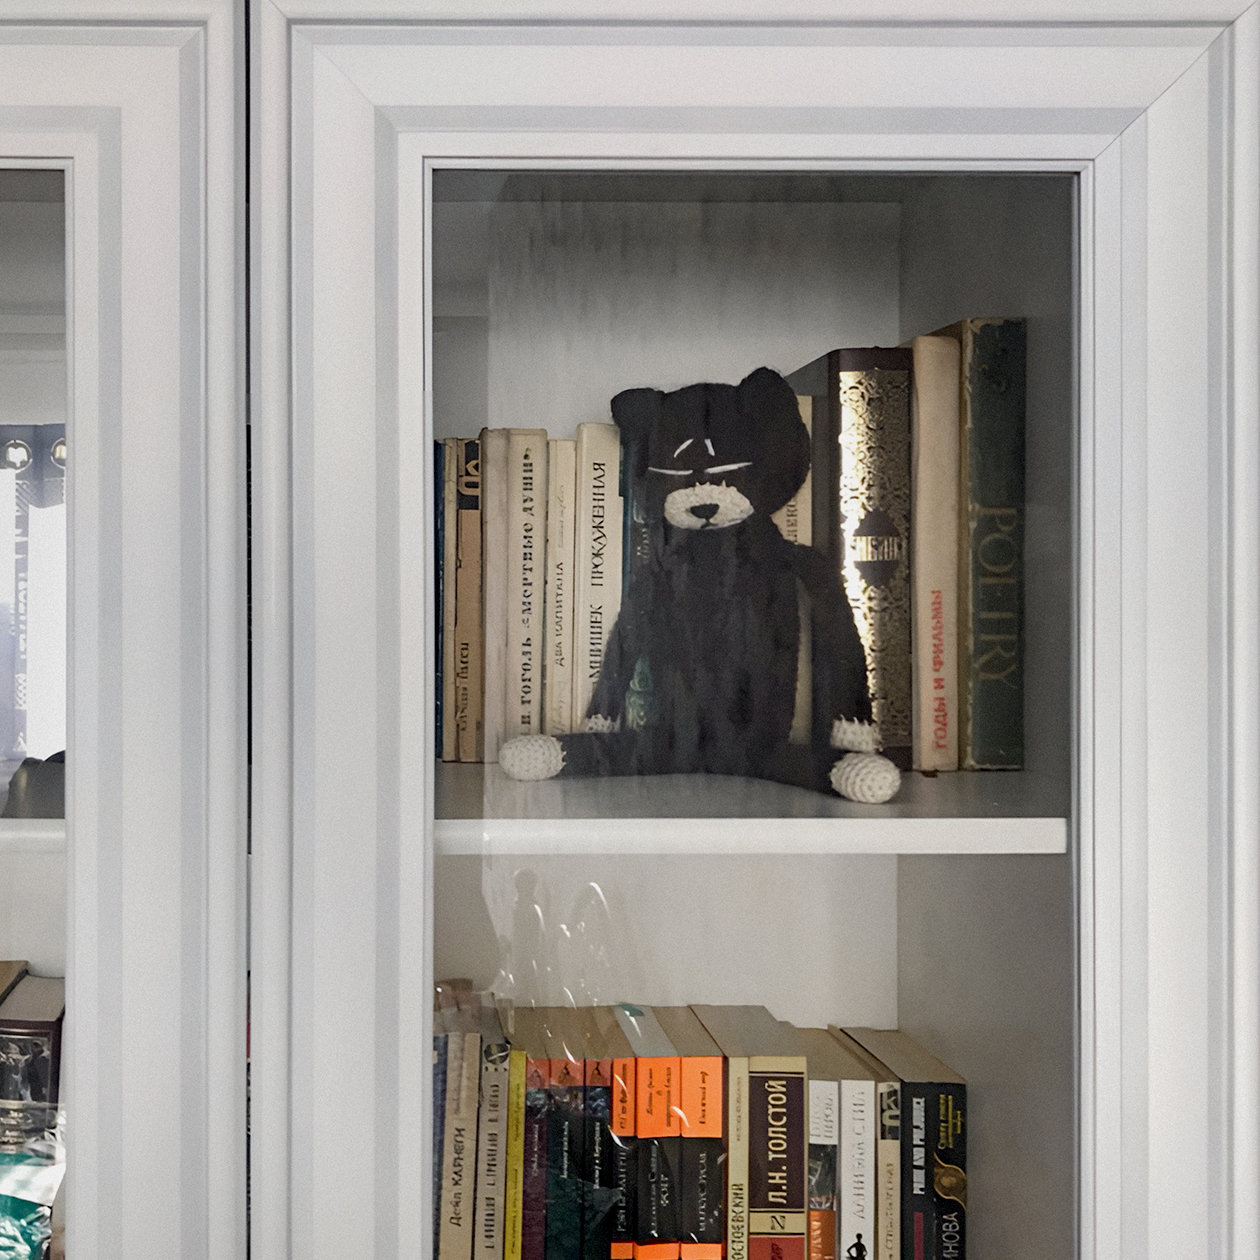 Подруга назвала кота Кузей и поселила его жить в книжный шкаф